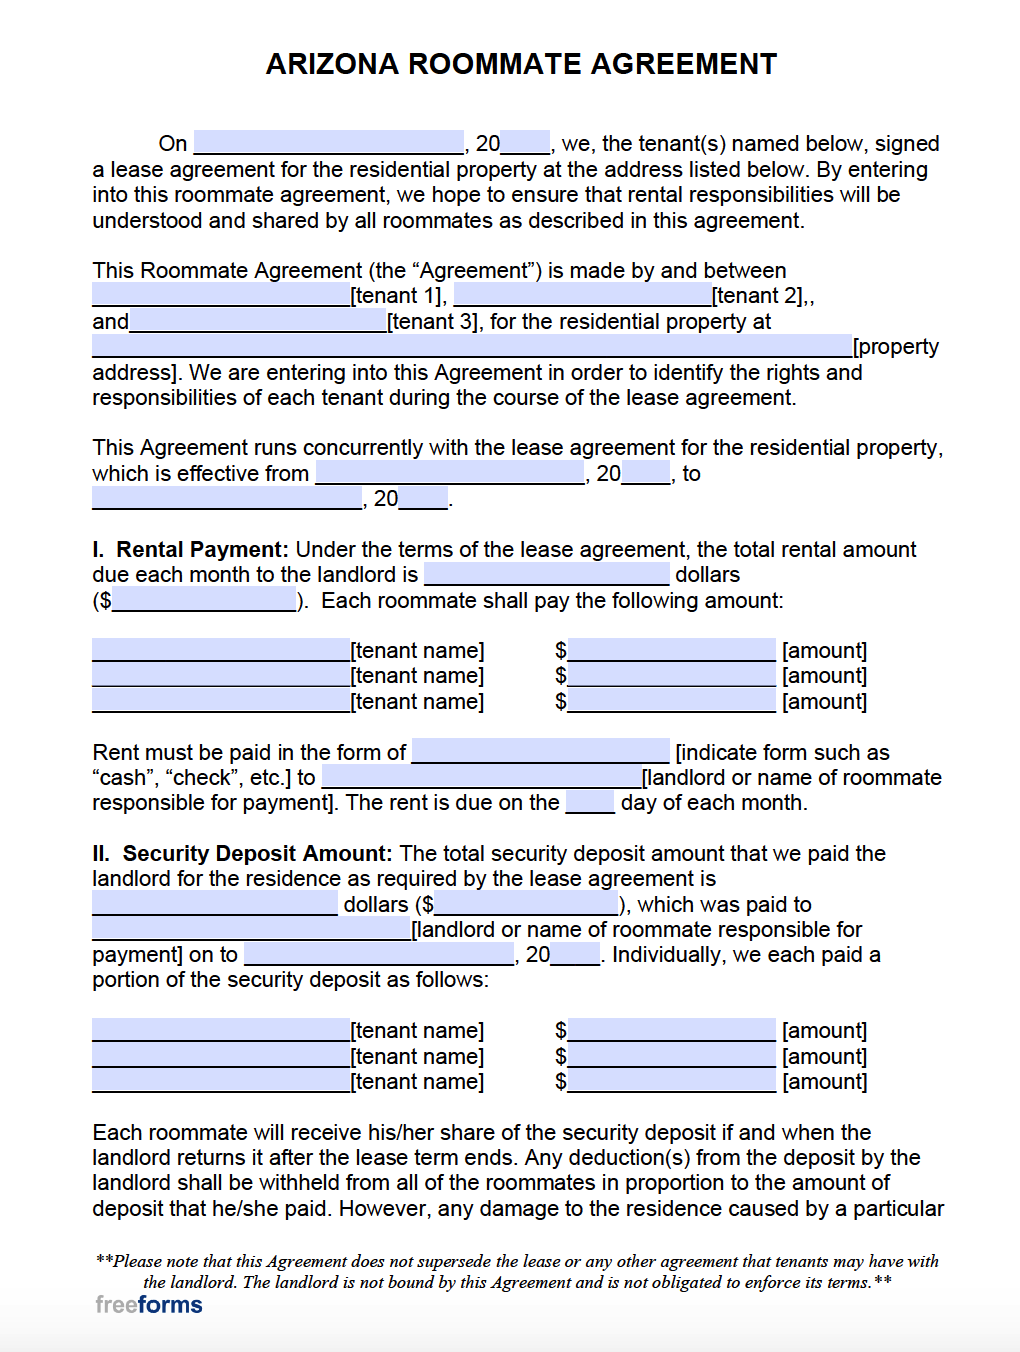 Free Arizona Roommate Agreement Template  PDF  WORD Within free roommate lease agreement template